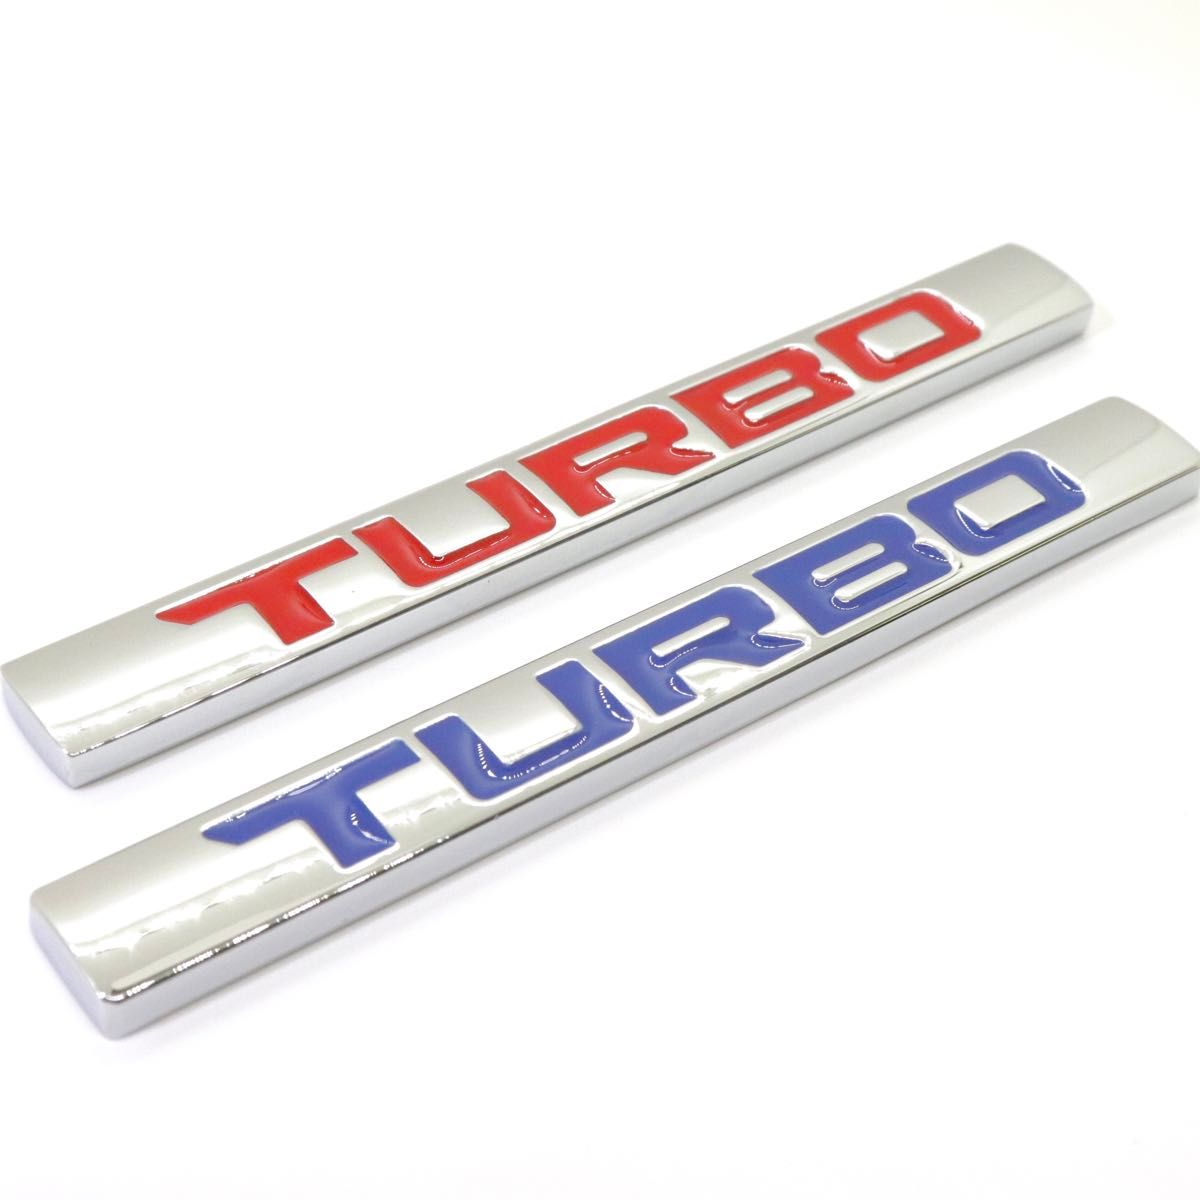 TURBO ターボ ロゴ クロームメッキ レッド 赤文字 エンブレム 外装 内装 車 カスタムパーツ 汎用品 カーパーツ